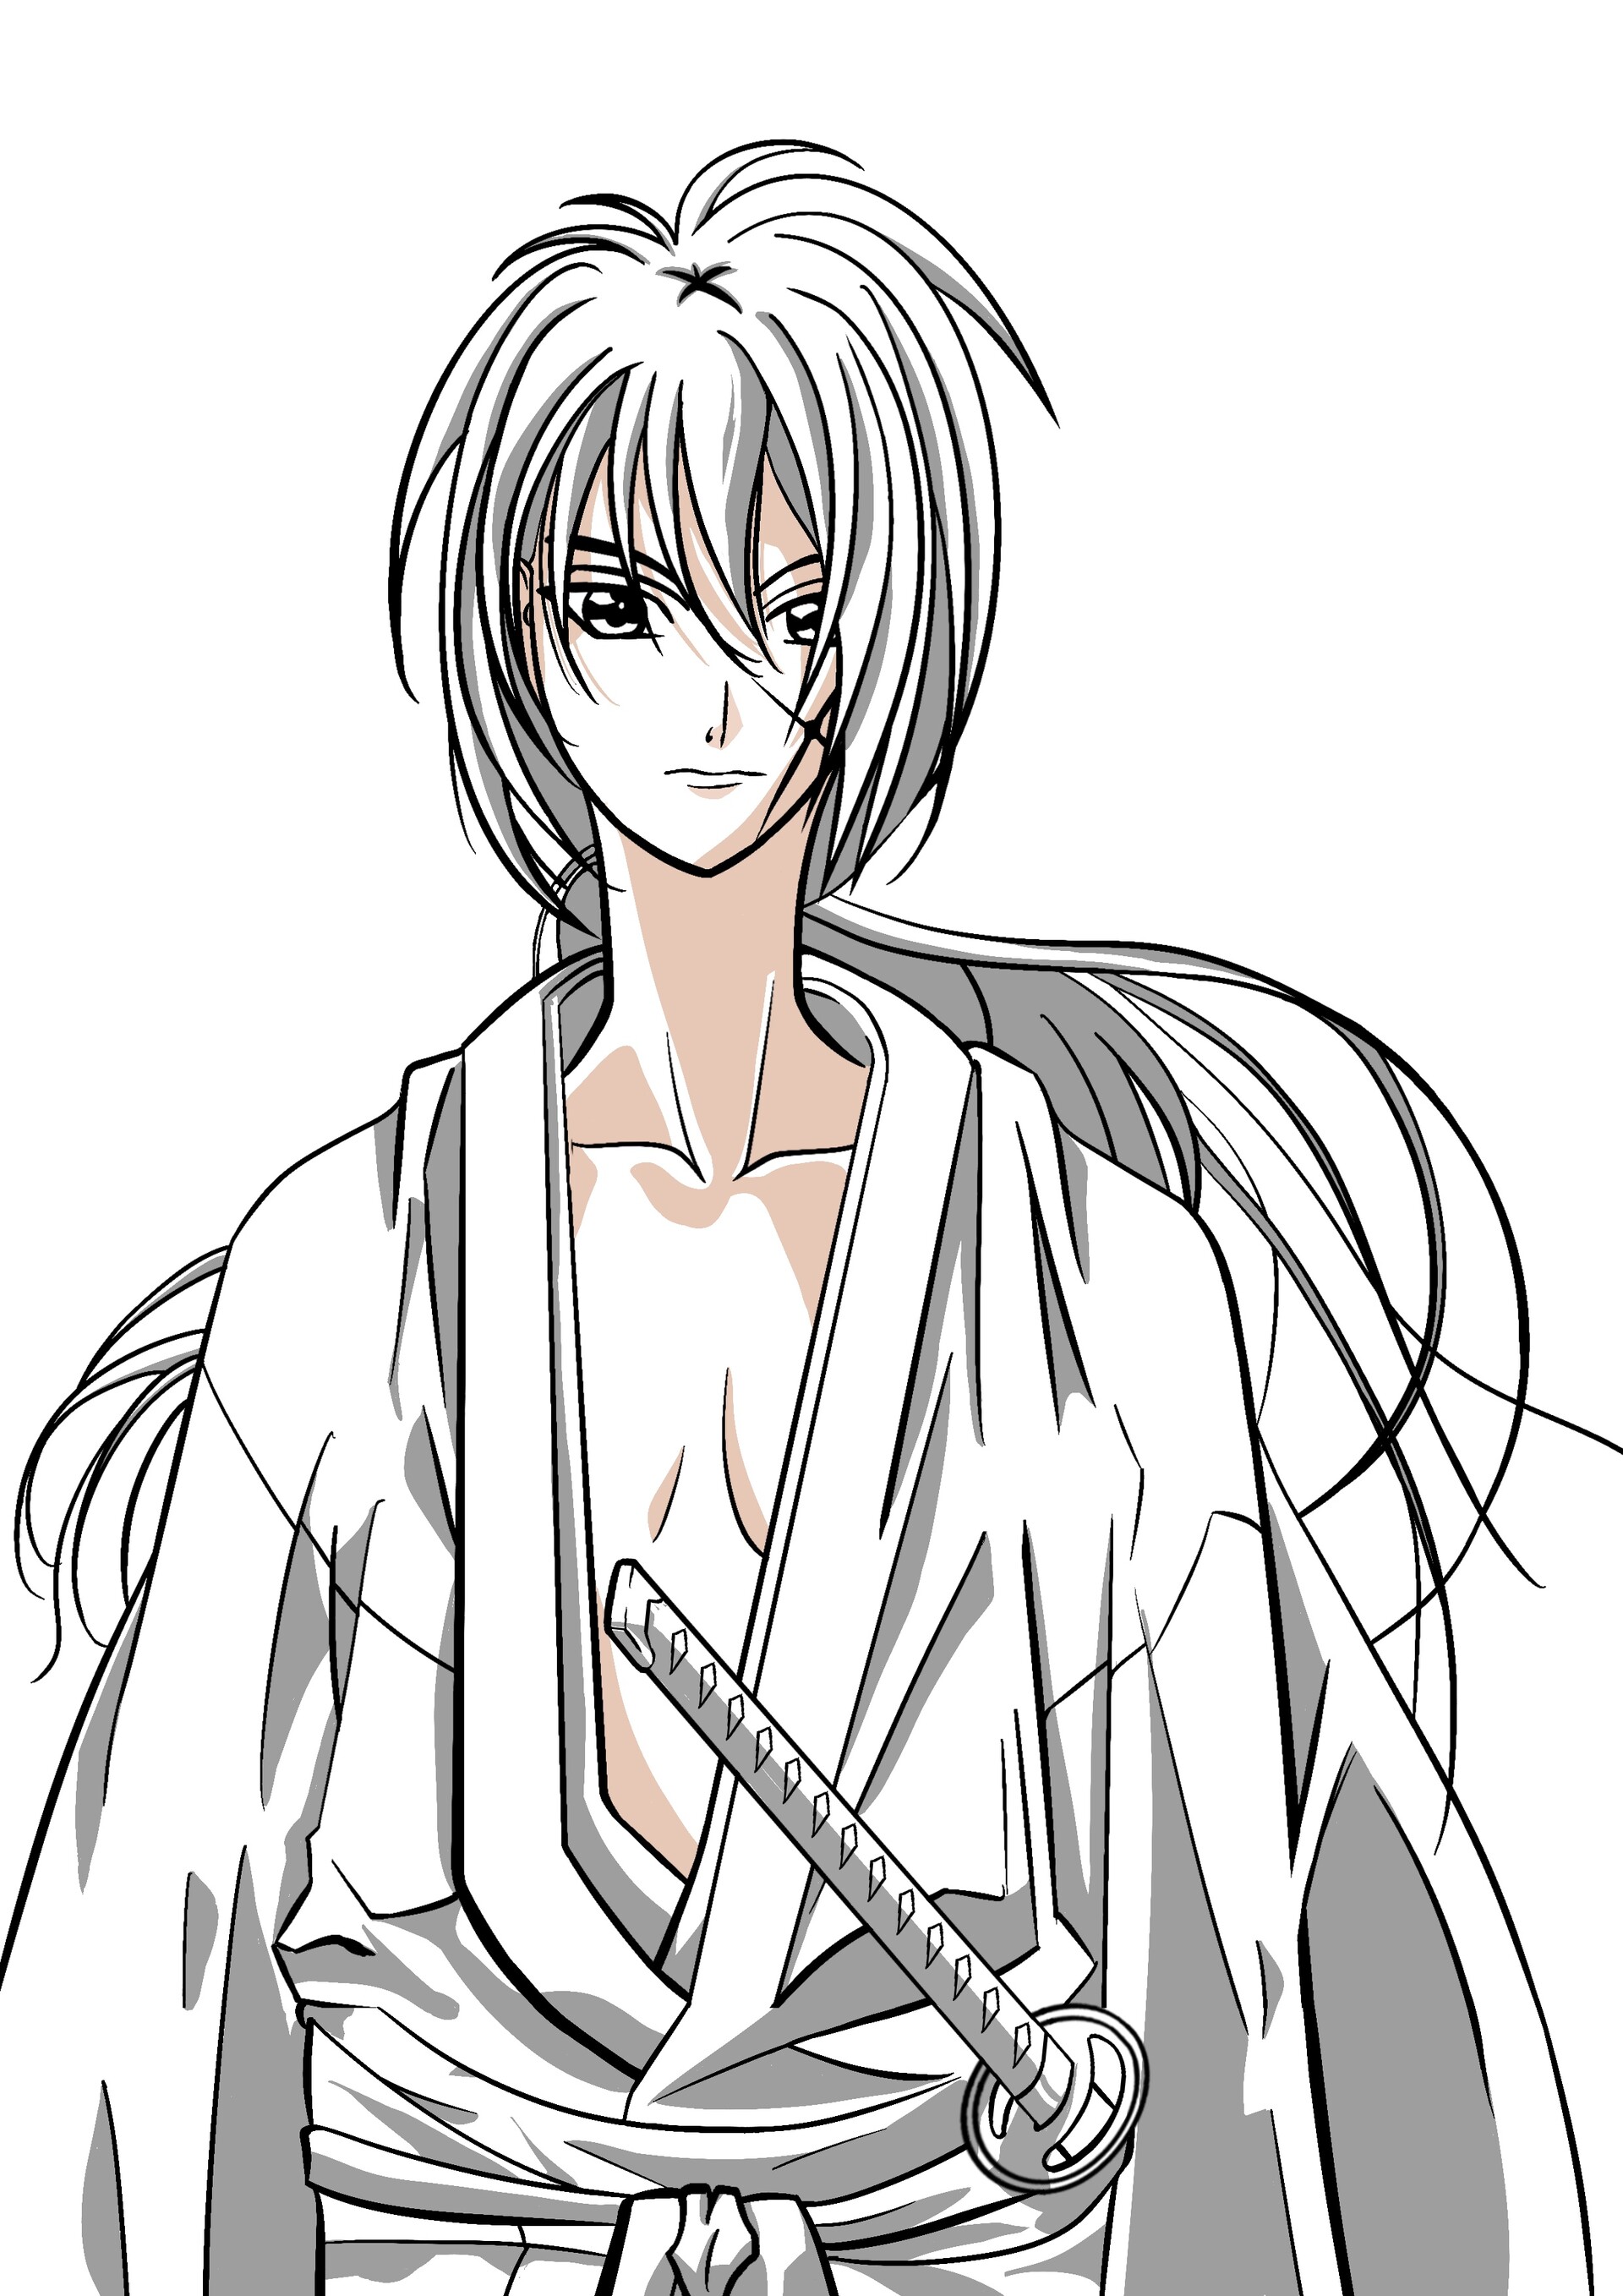 himura kenshin (rurouni kenshin) drawn by mame_moyashi